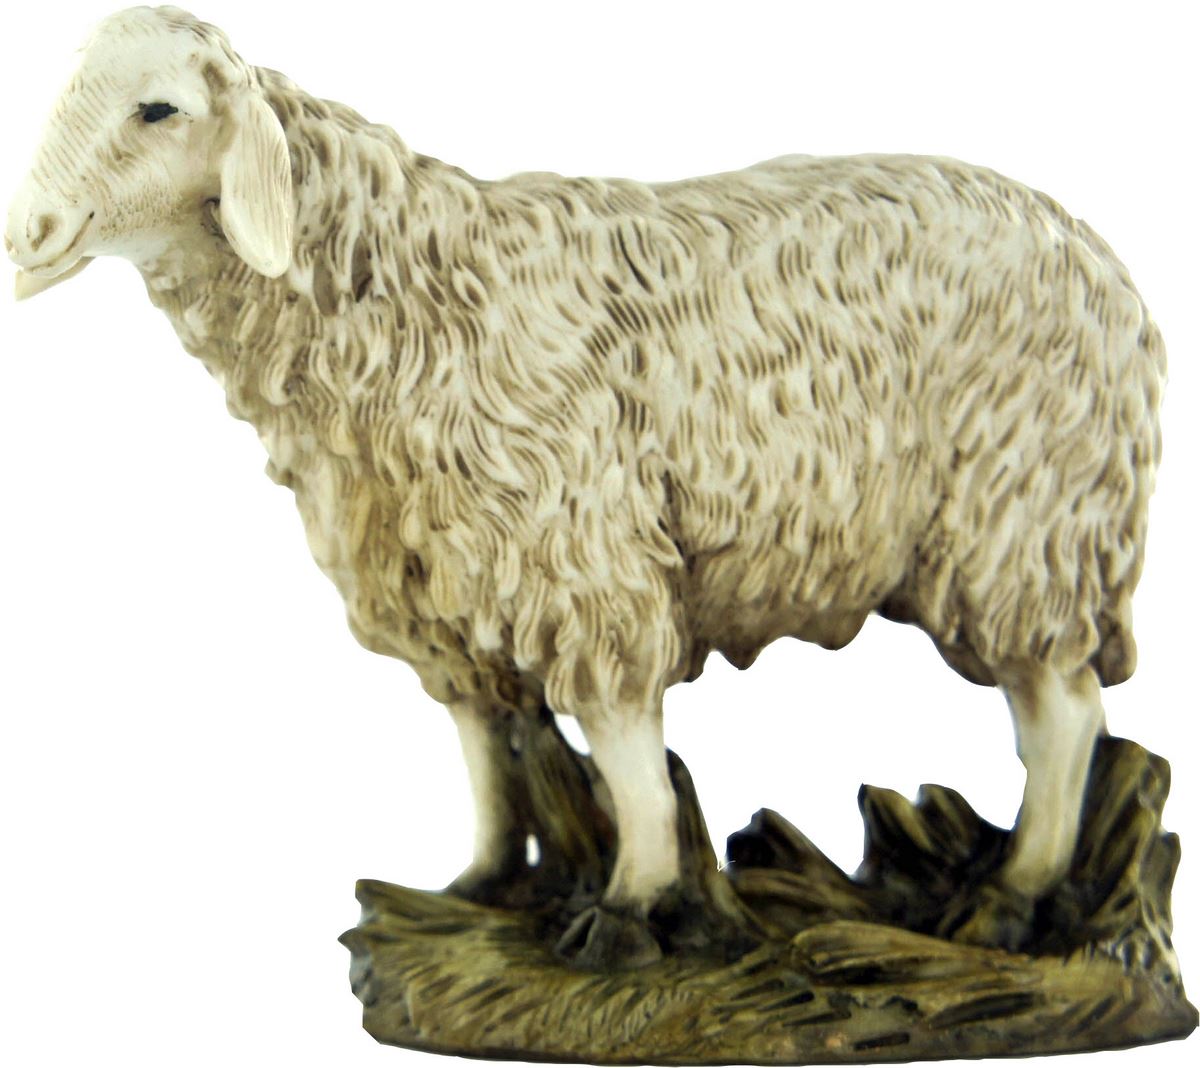 statuine presepe: pecora con testa alta linea martino landi per presepe da cm 10 